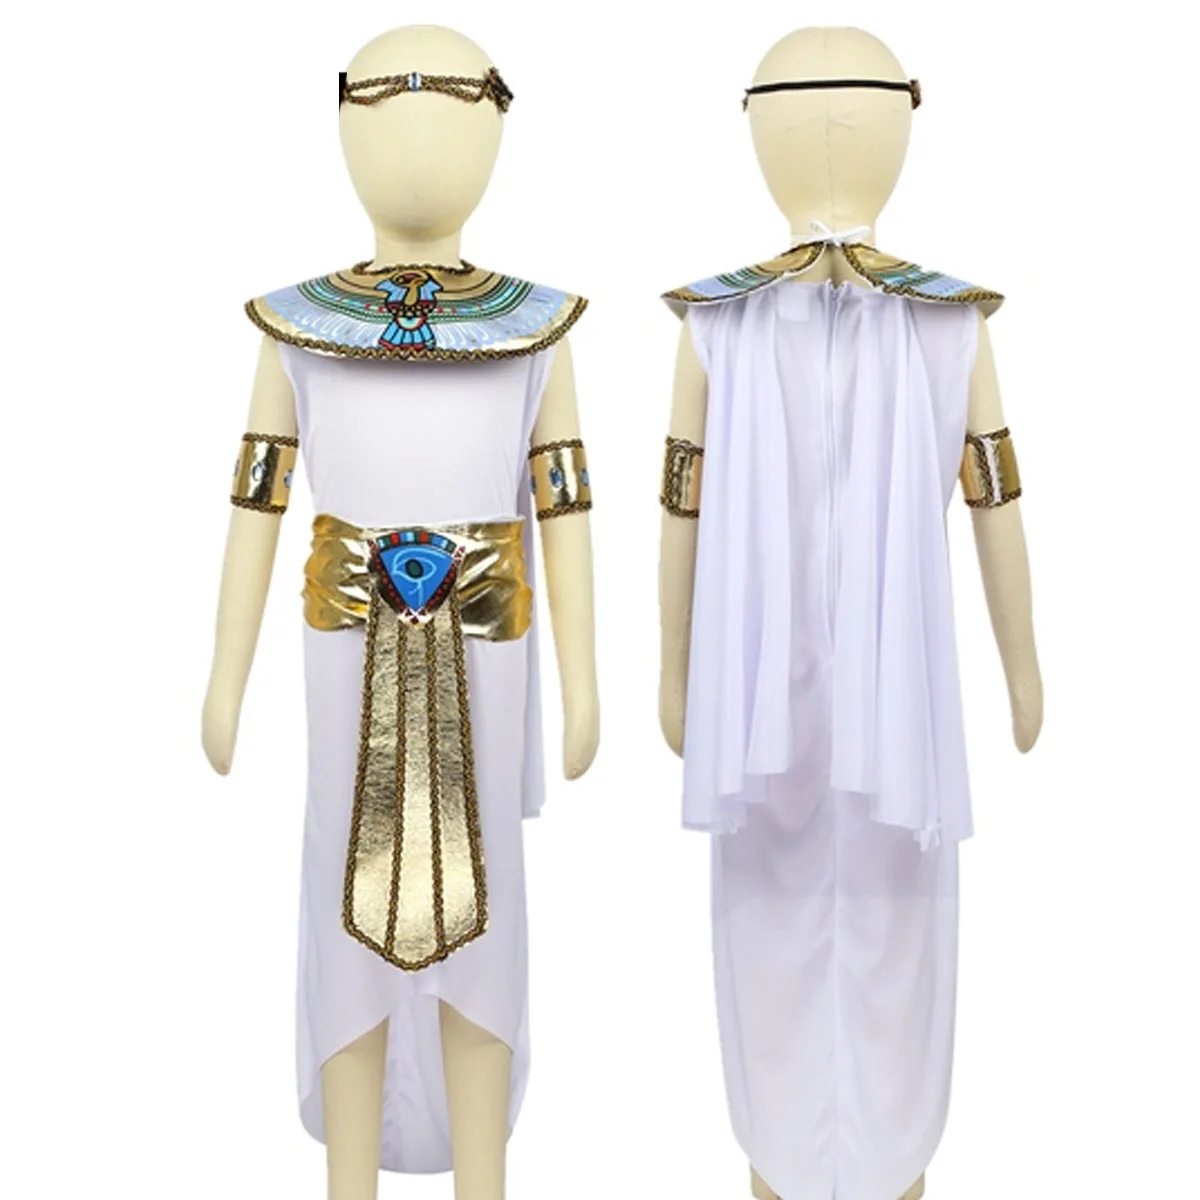 Bambini faraone egiziano Costume Cleopatra Set ragazze Halloween antico  egitto regina principessa Cosplay gioco di ruolo vestire vestiti -  AliExpress